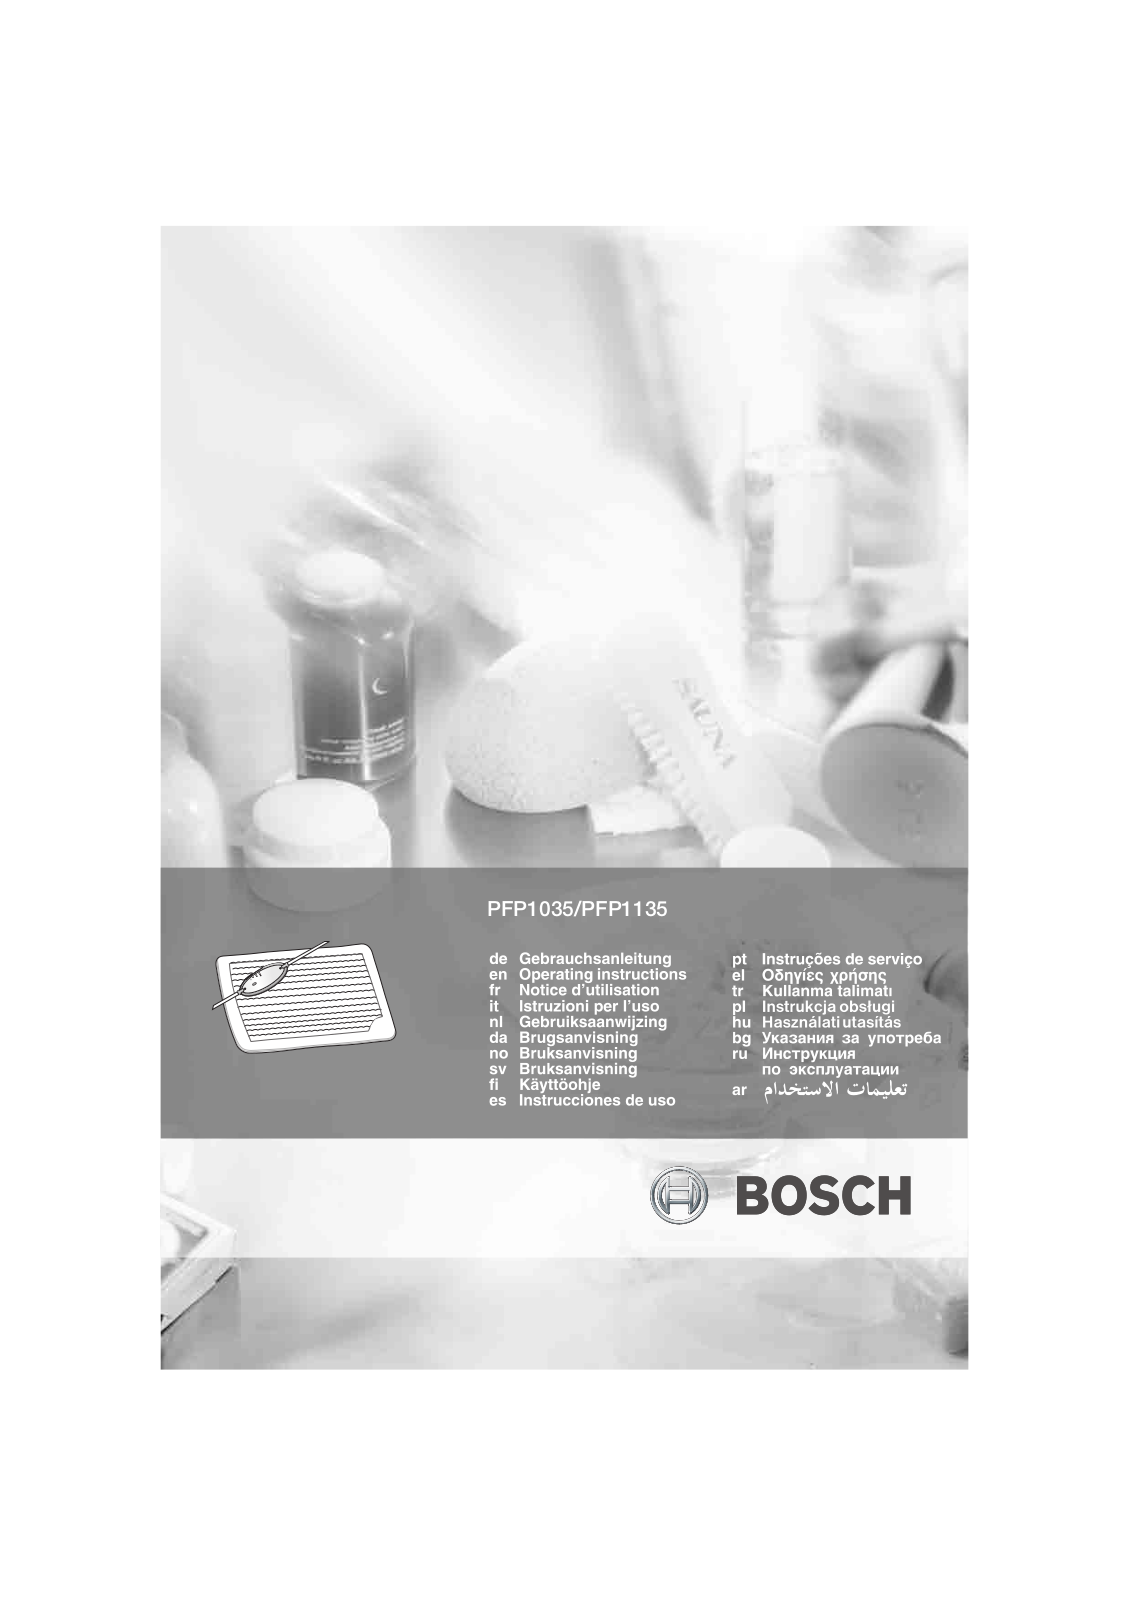 Bosch PFP1135, PFP1035 Manual